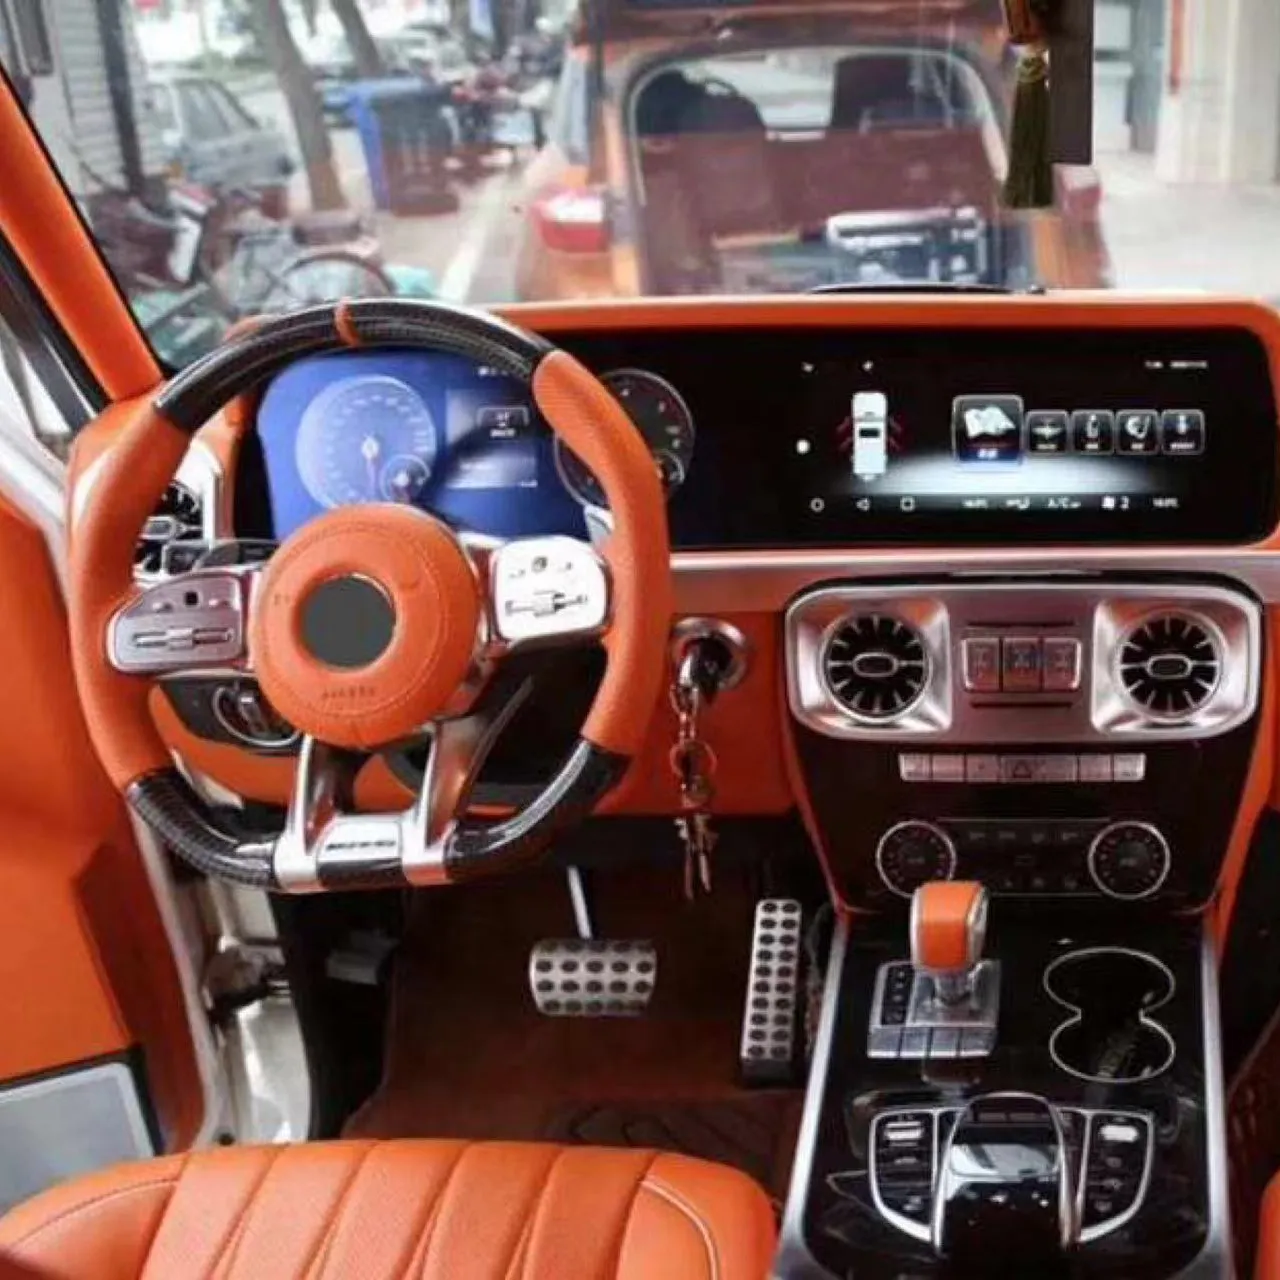 Kit interior Mercedes Benz G class 2016 hingga 2020